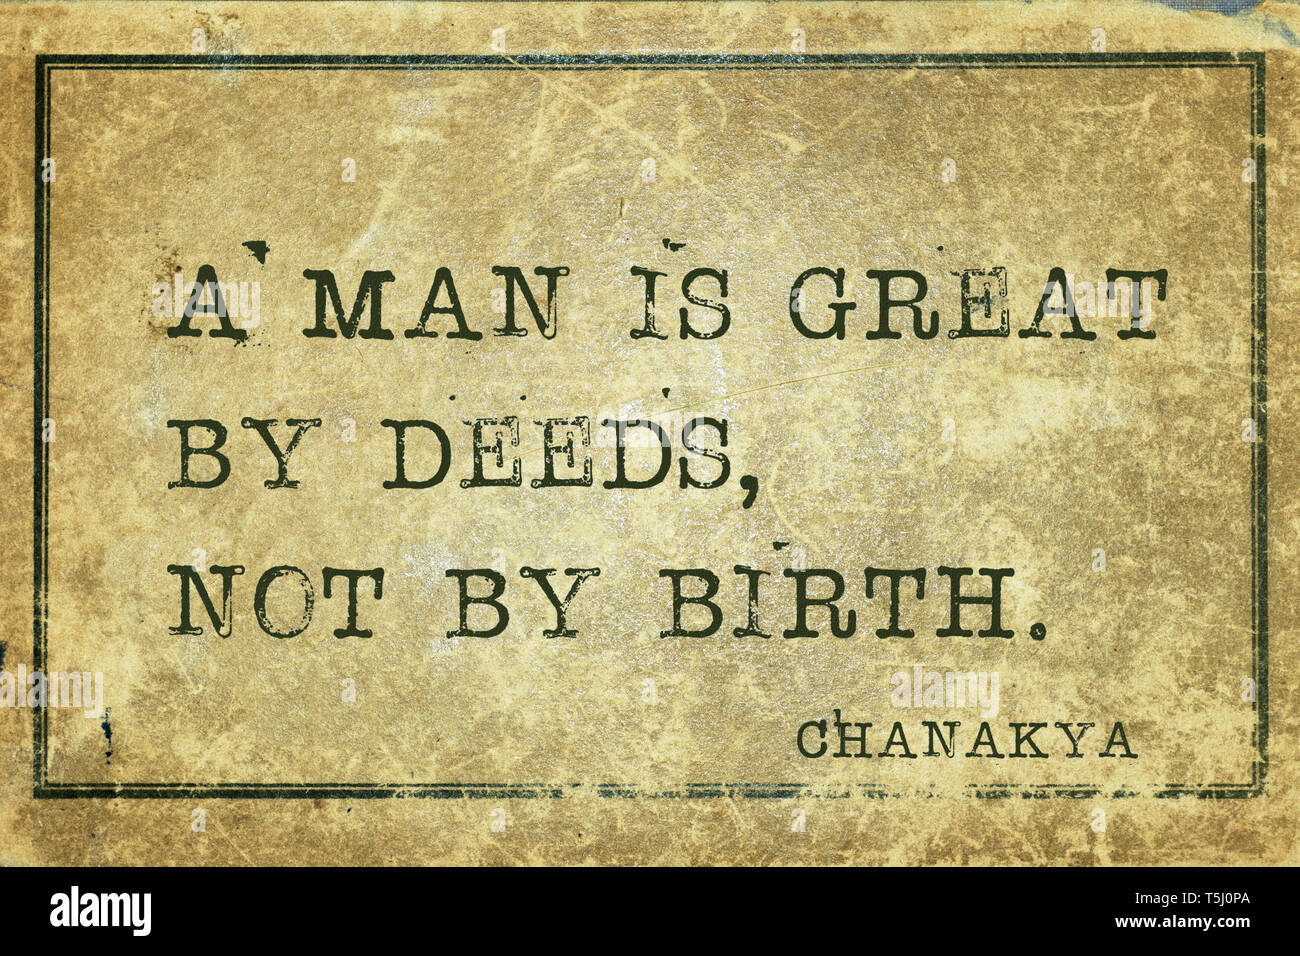 Un uomo è grande da fatti - indiano antico filosofo e uomo politico Chanakya preventivo stampato su grunge cartone vintage Foto Stock